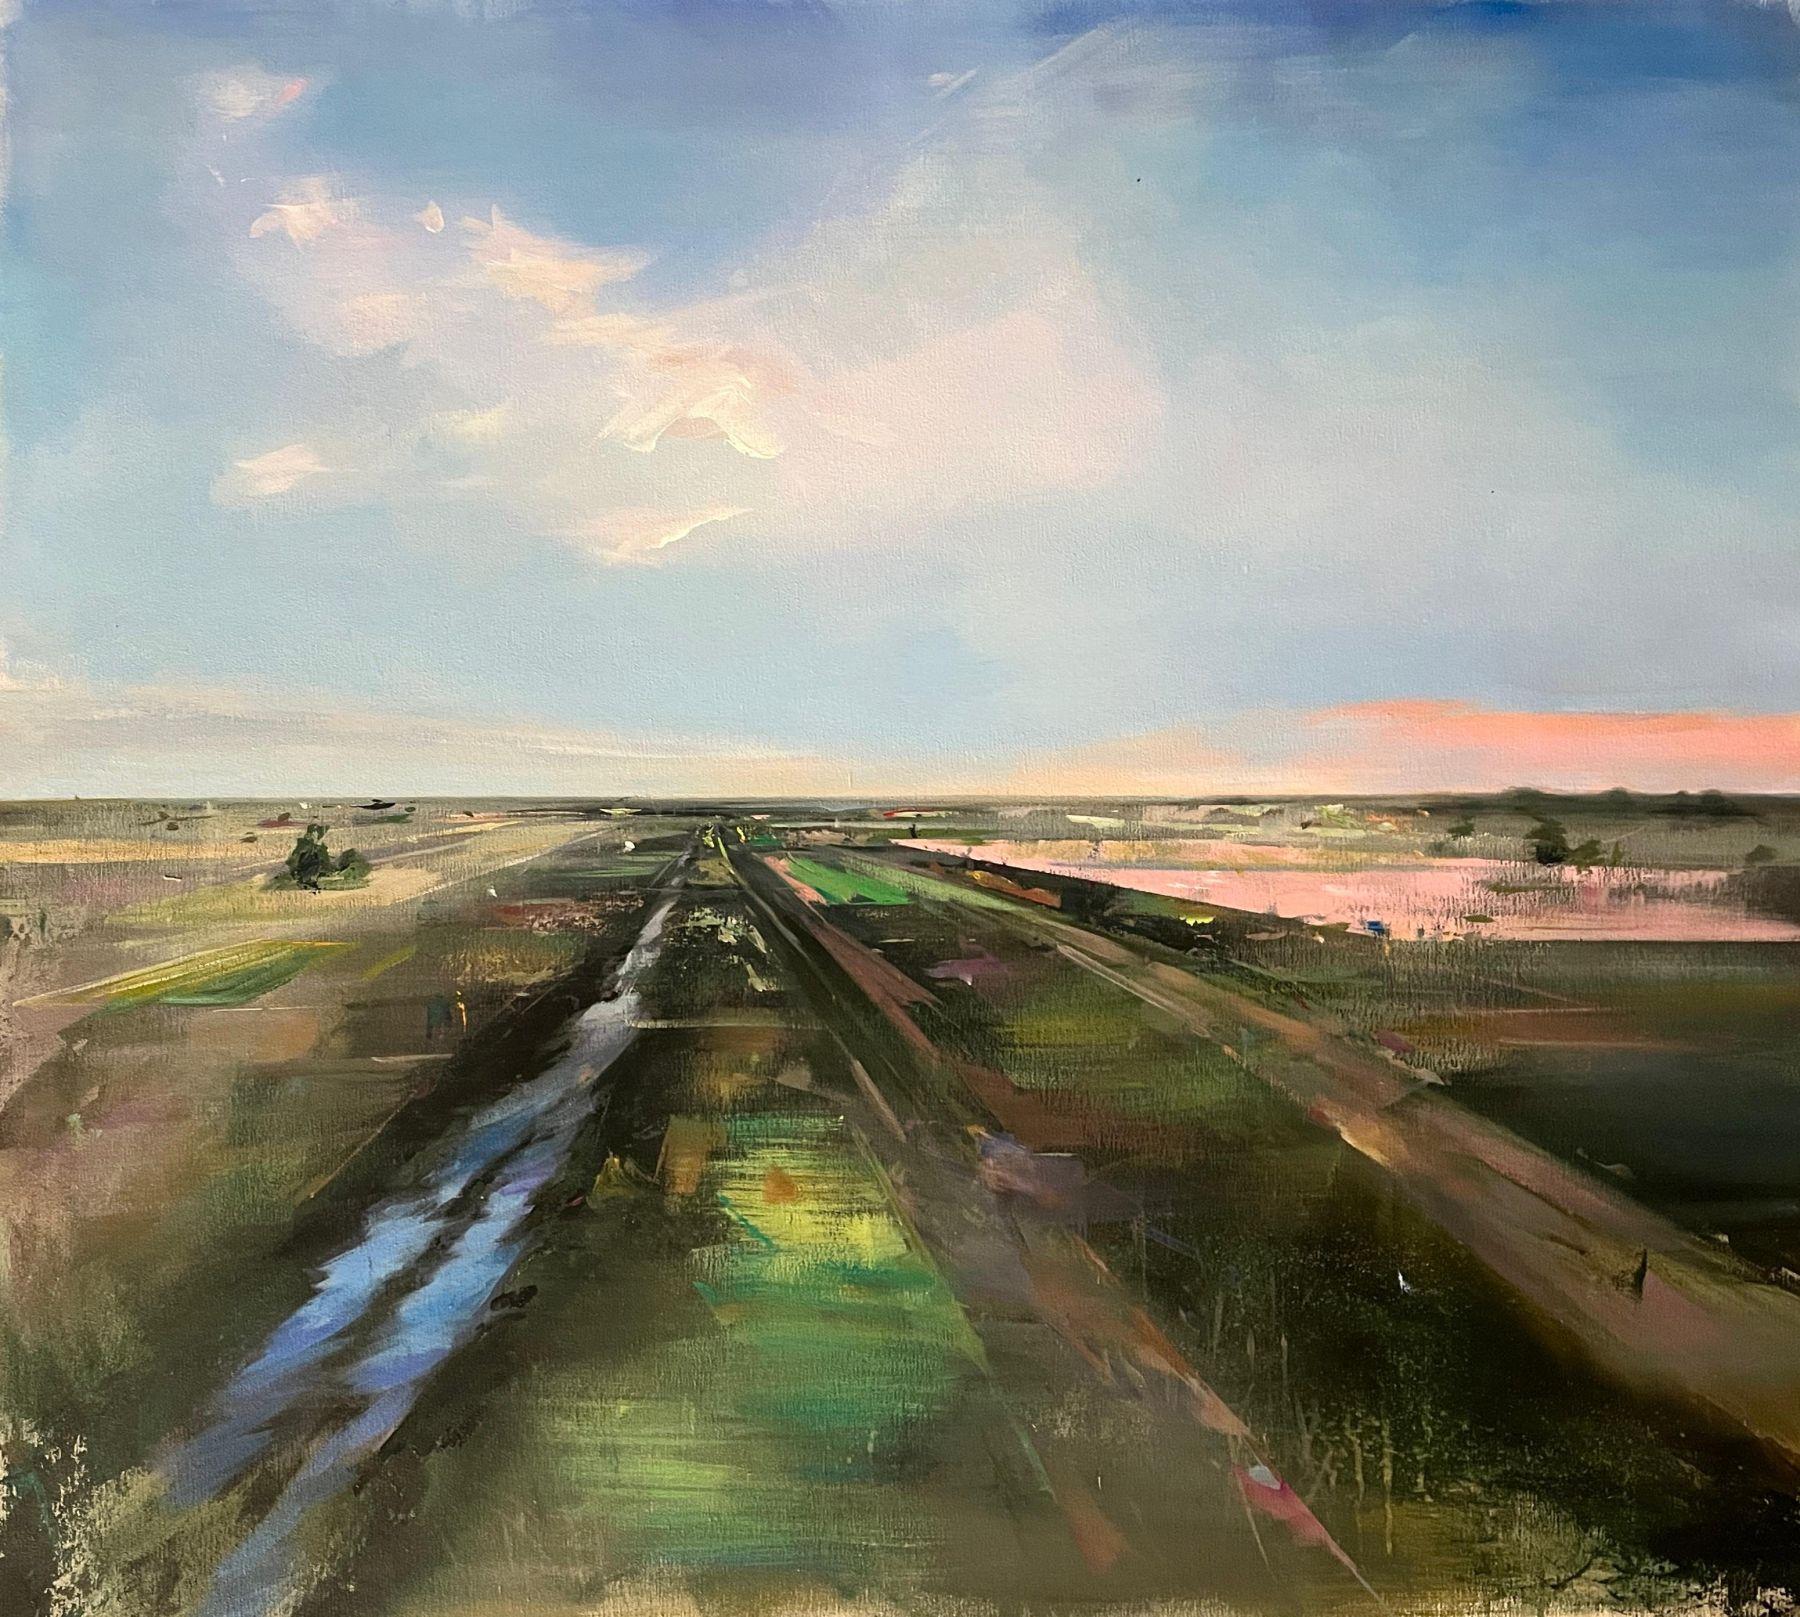 "Distant Horizon" ist ein 38x42 Ölgemälde auf Leinwand des Künstlers Jamie Crisol. Das Motiv ist eine abstrahierte Luftaufnahme eines ländlichen Feldes in Grün-, Braun- und Rosatönen. Führende Linien, die den Eindruck von ausgetretenen Pfaden und